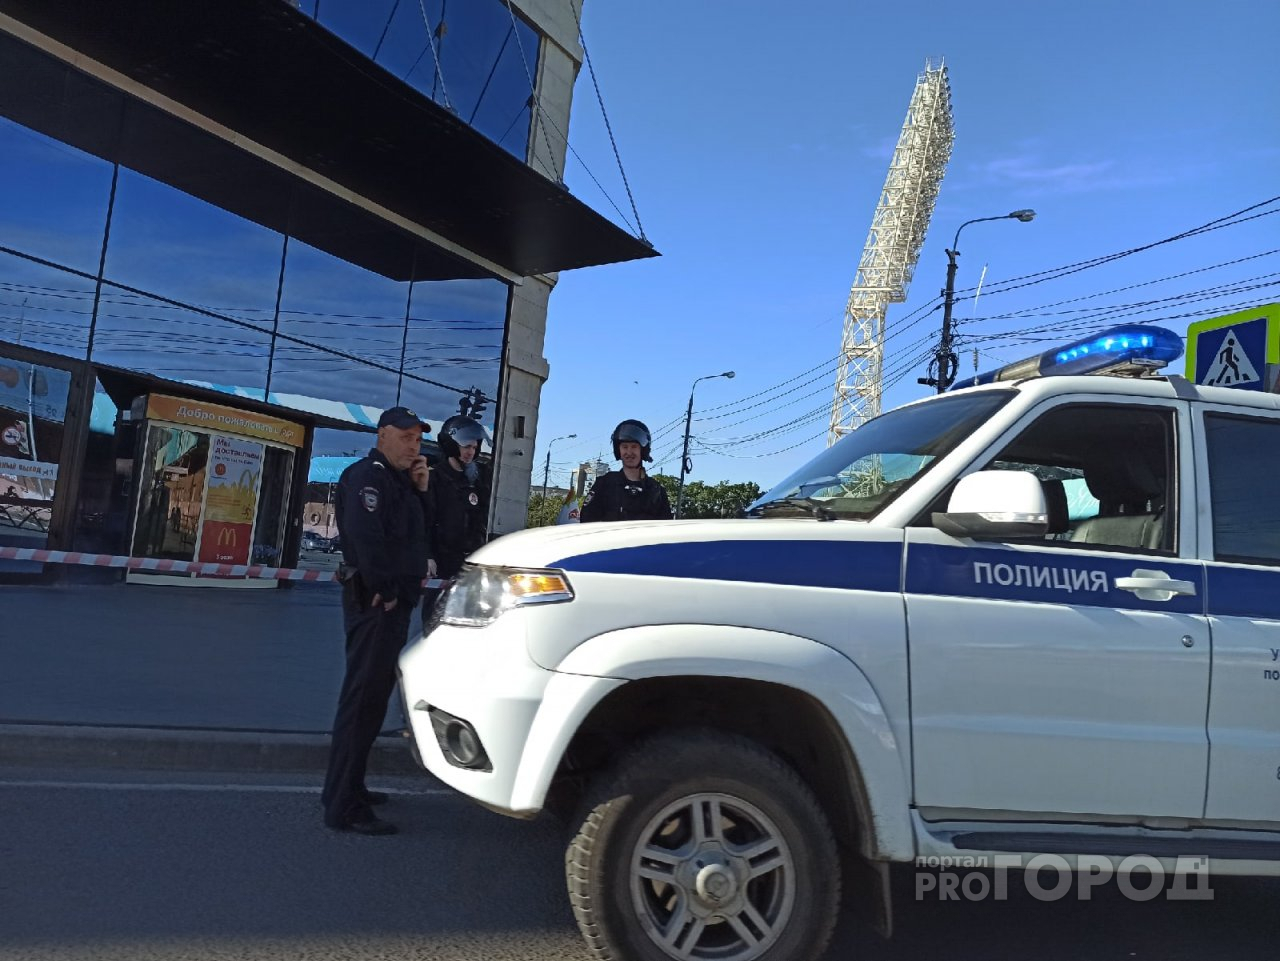 Толпа на улице и оцепление: что произошло в ТЦ "Аура" в Ярославле